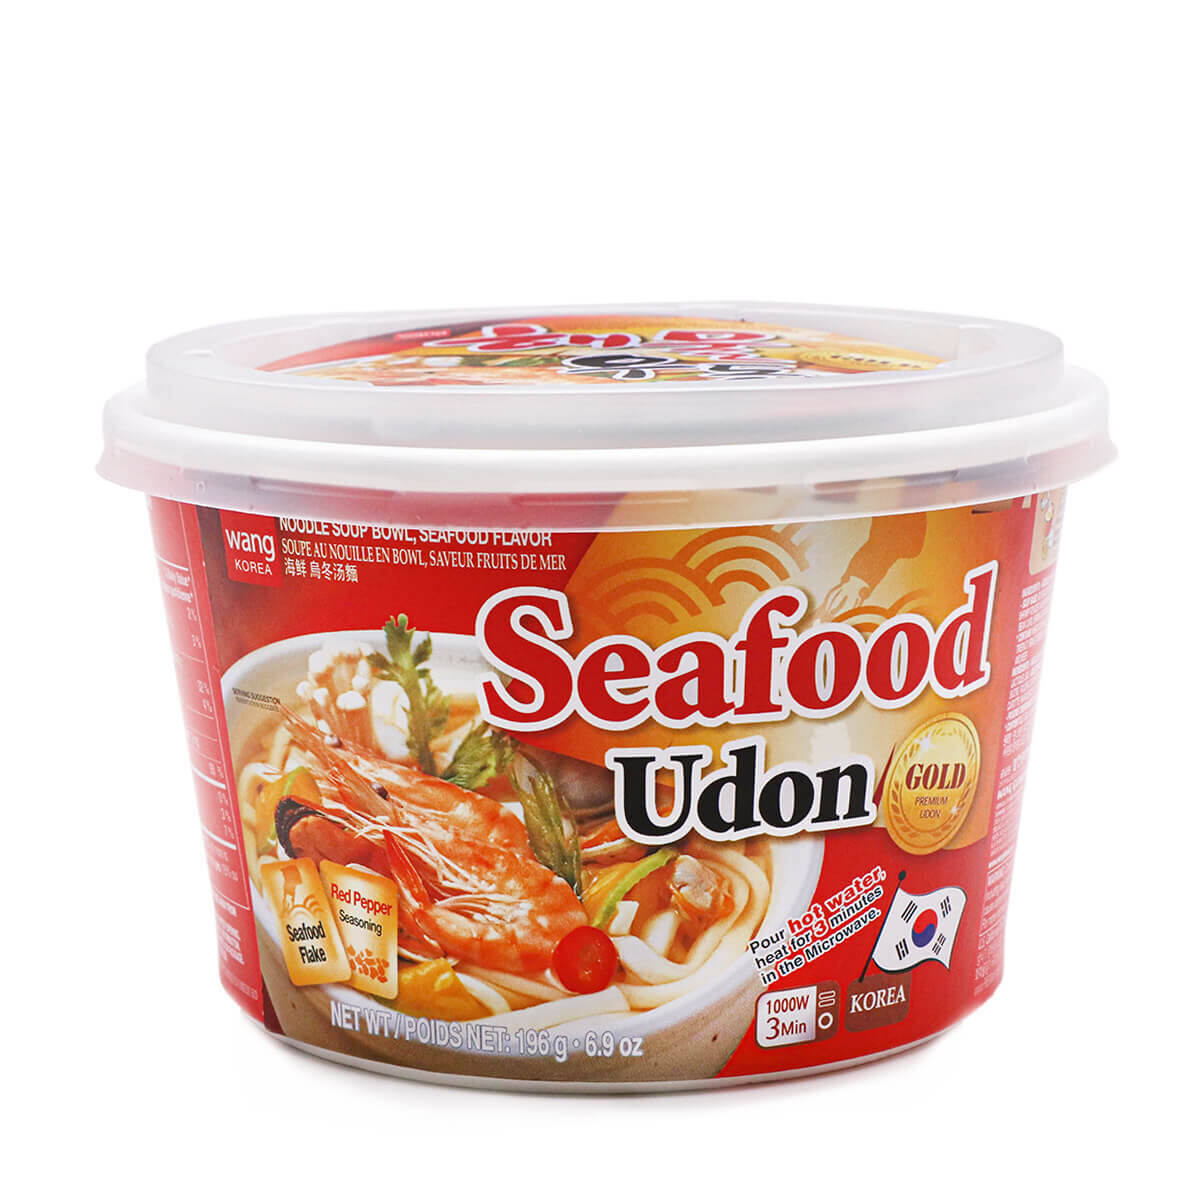 Wang Seafood Udon (196G)